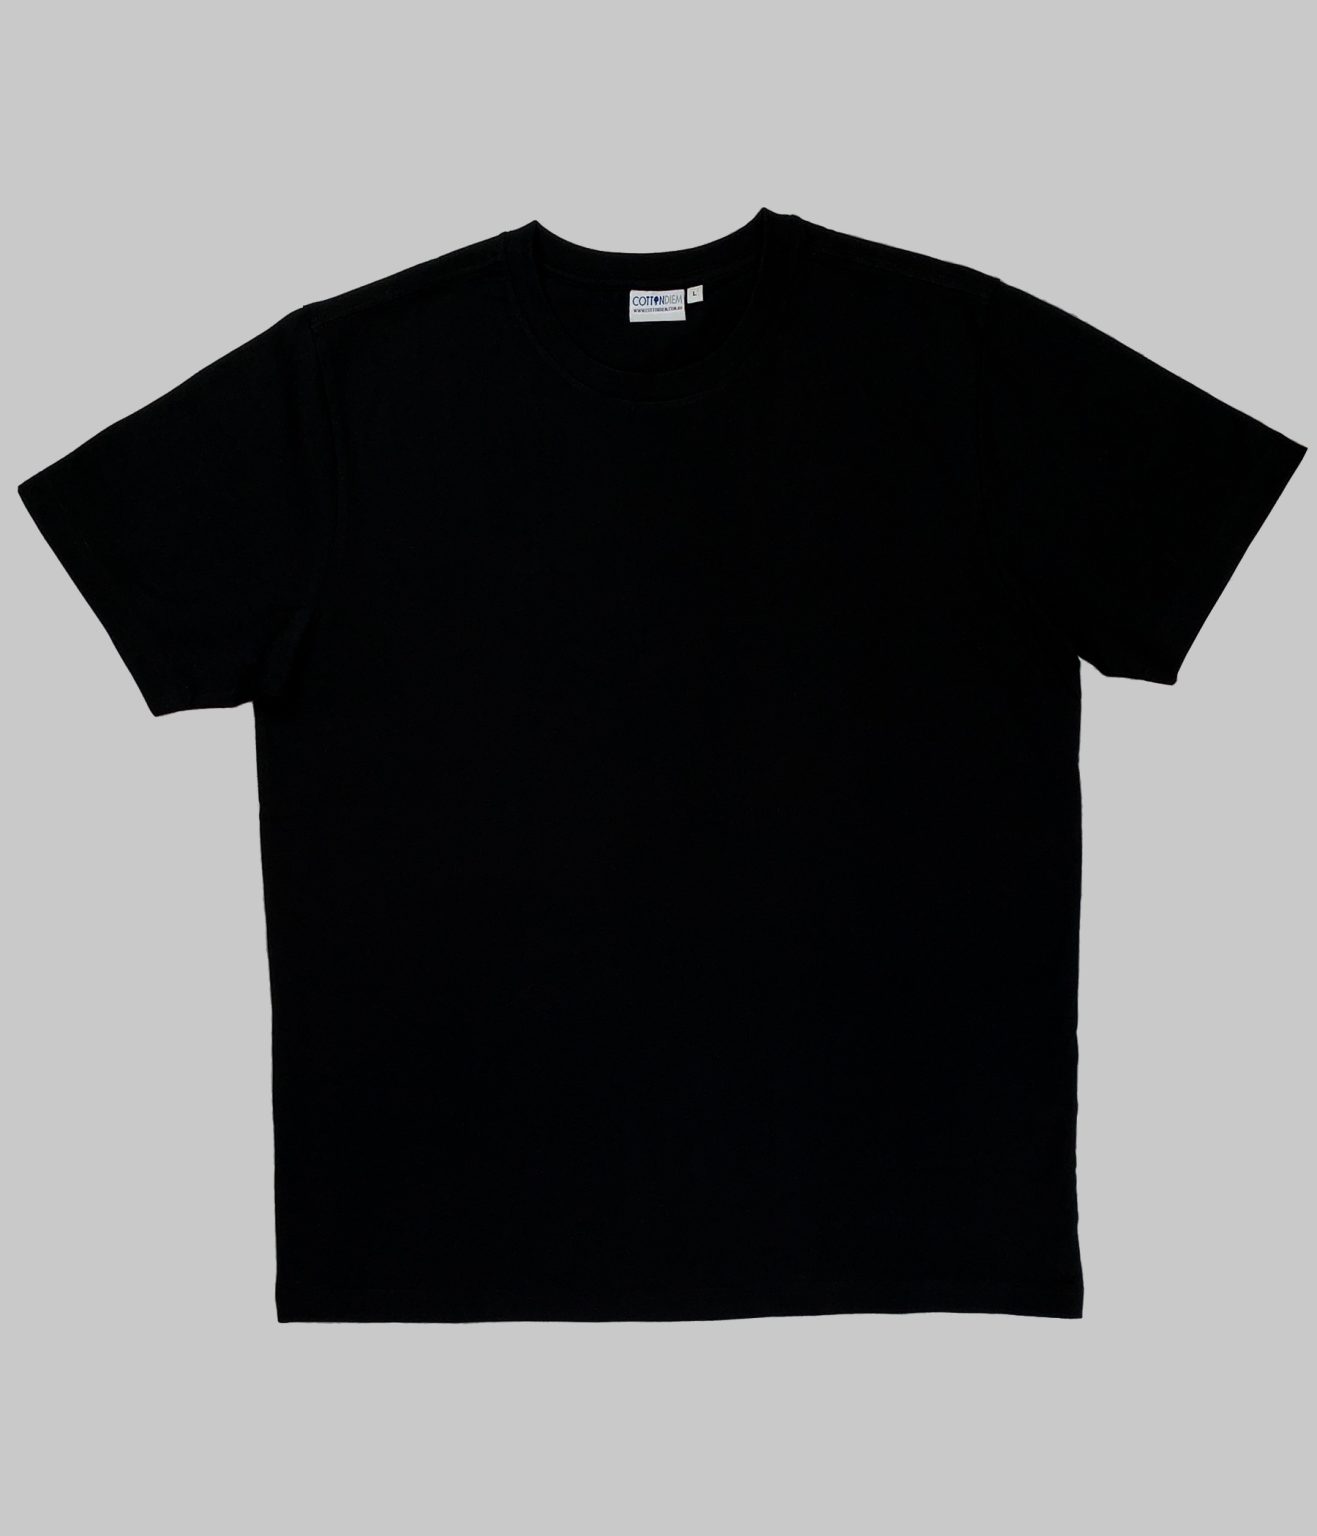 Blank Black T Shirts 200 Gsm